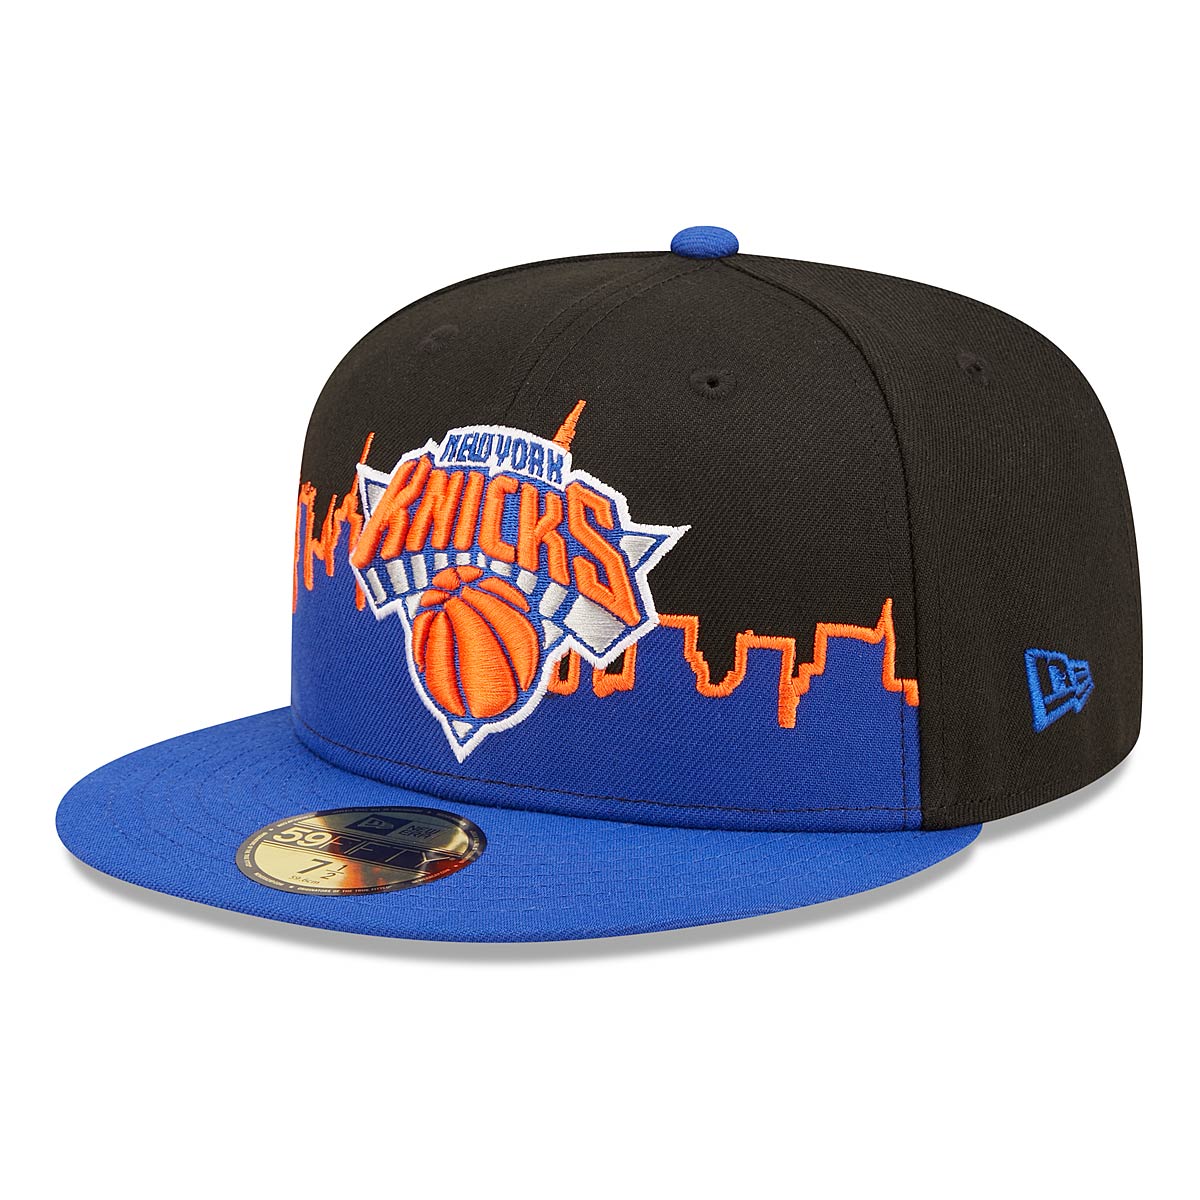 New Era Nba New York Knicks Tipoff 5950 Cap, Med Blue